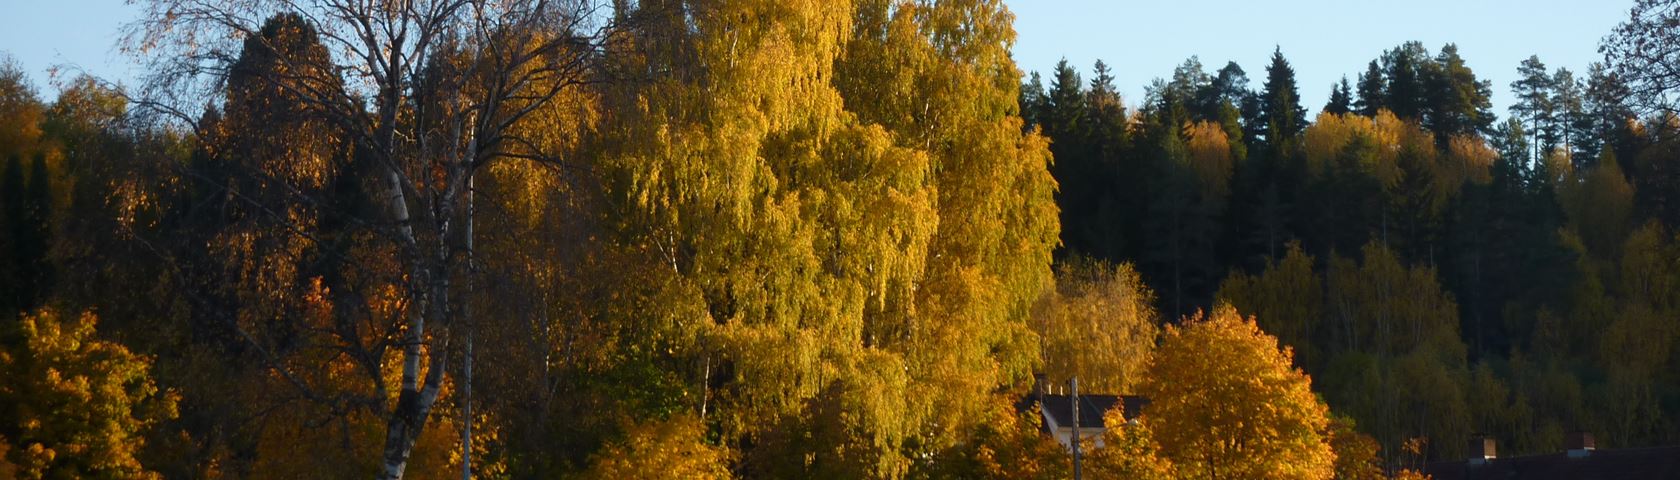 Autumn Birches